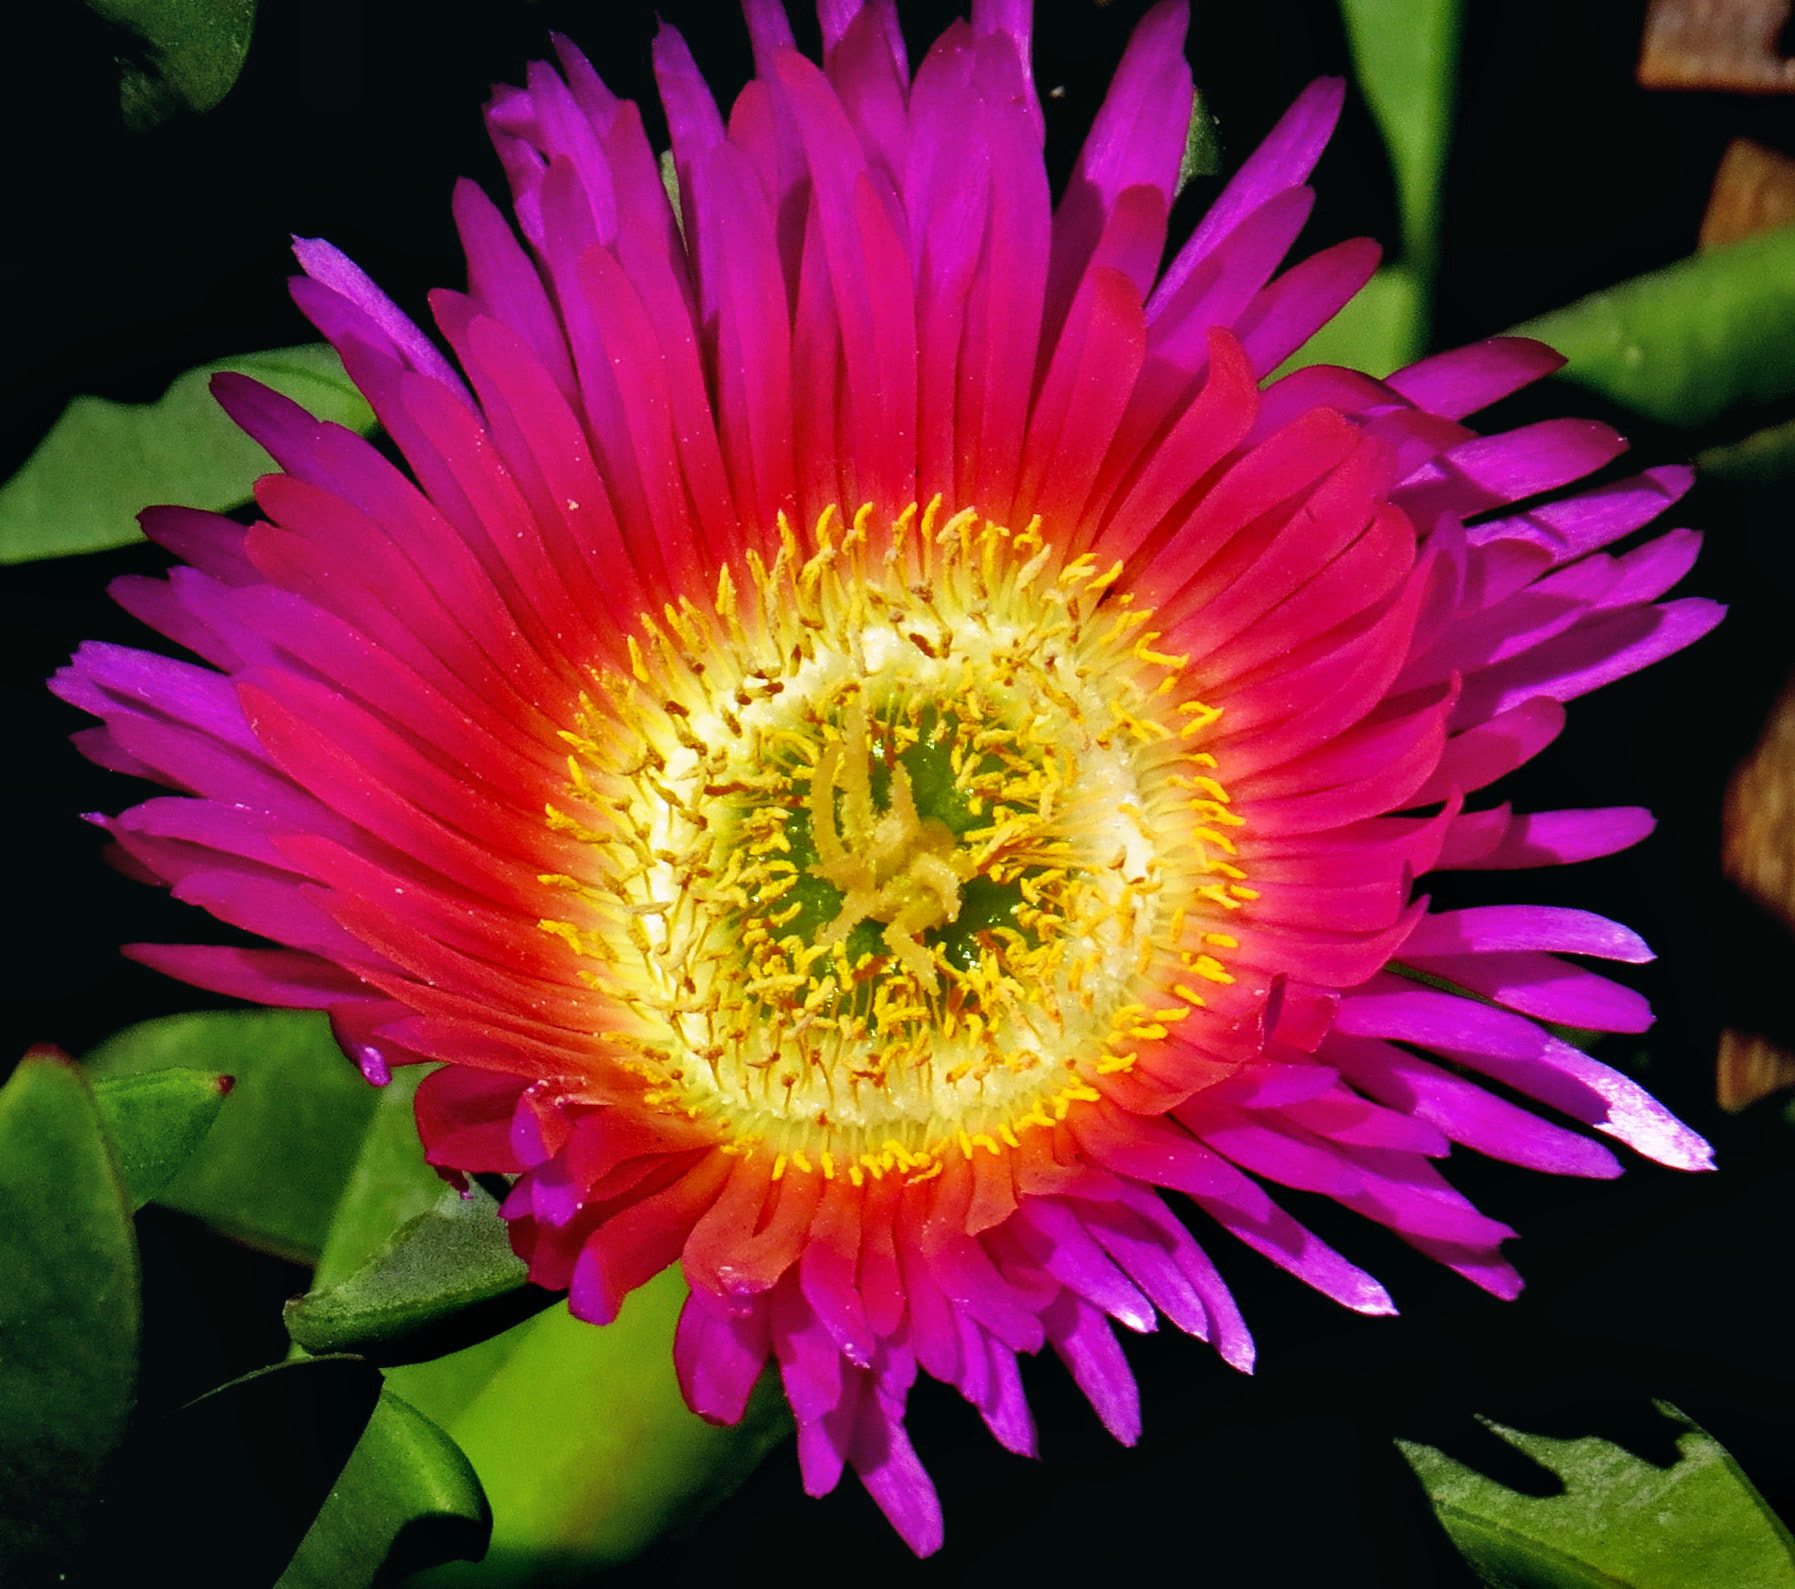 Canon PowerShot SX50 HS + 4.3 - 215.0 mm sample photo. Purple dandelion flower photography